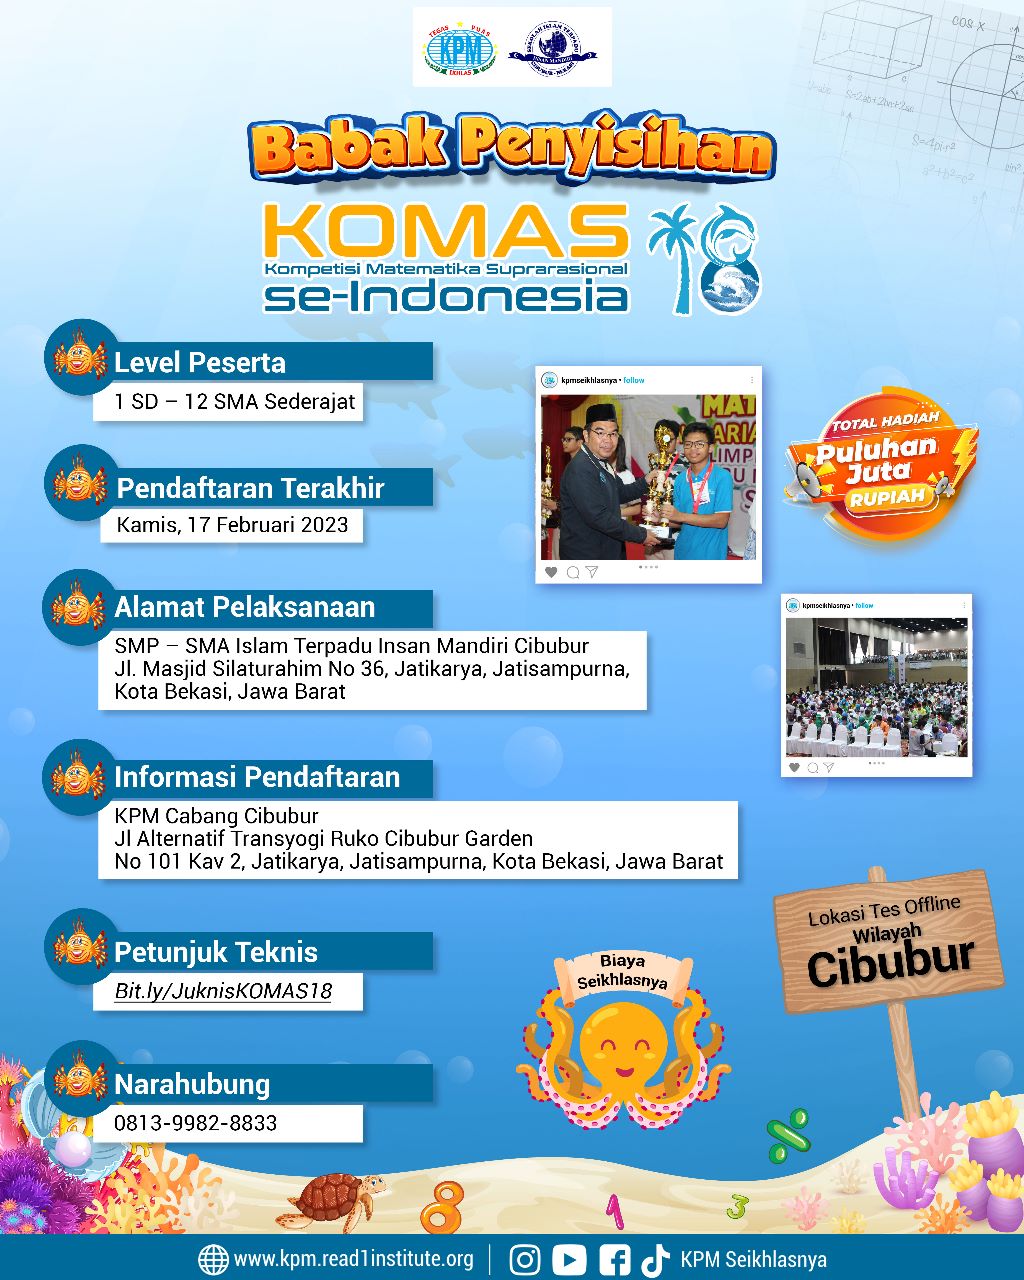 You are currently viewing Babak Penyisihan KOMAS (Kompetisi Matematika Suprarasional) Se Indonesia